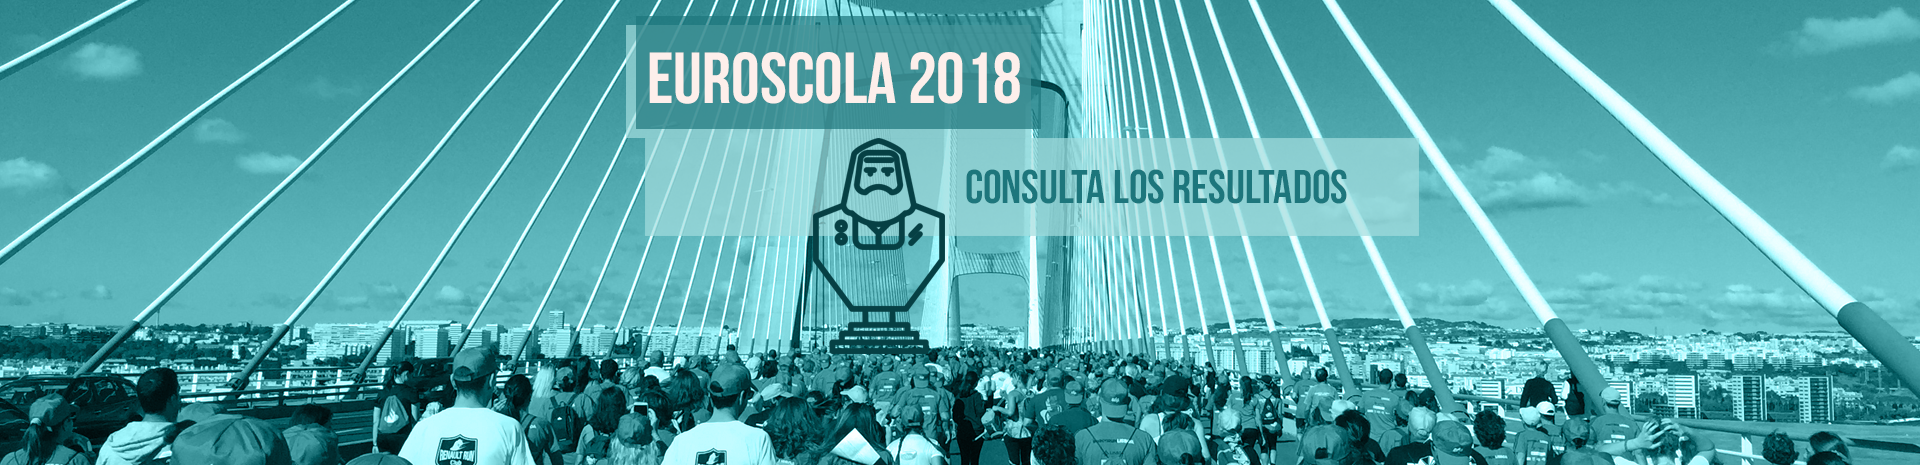 Concurso Euroscola 2018